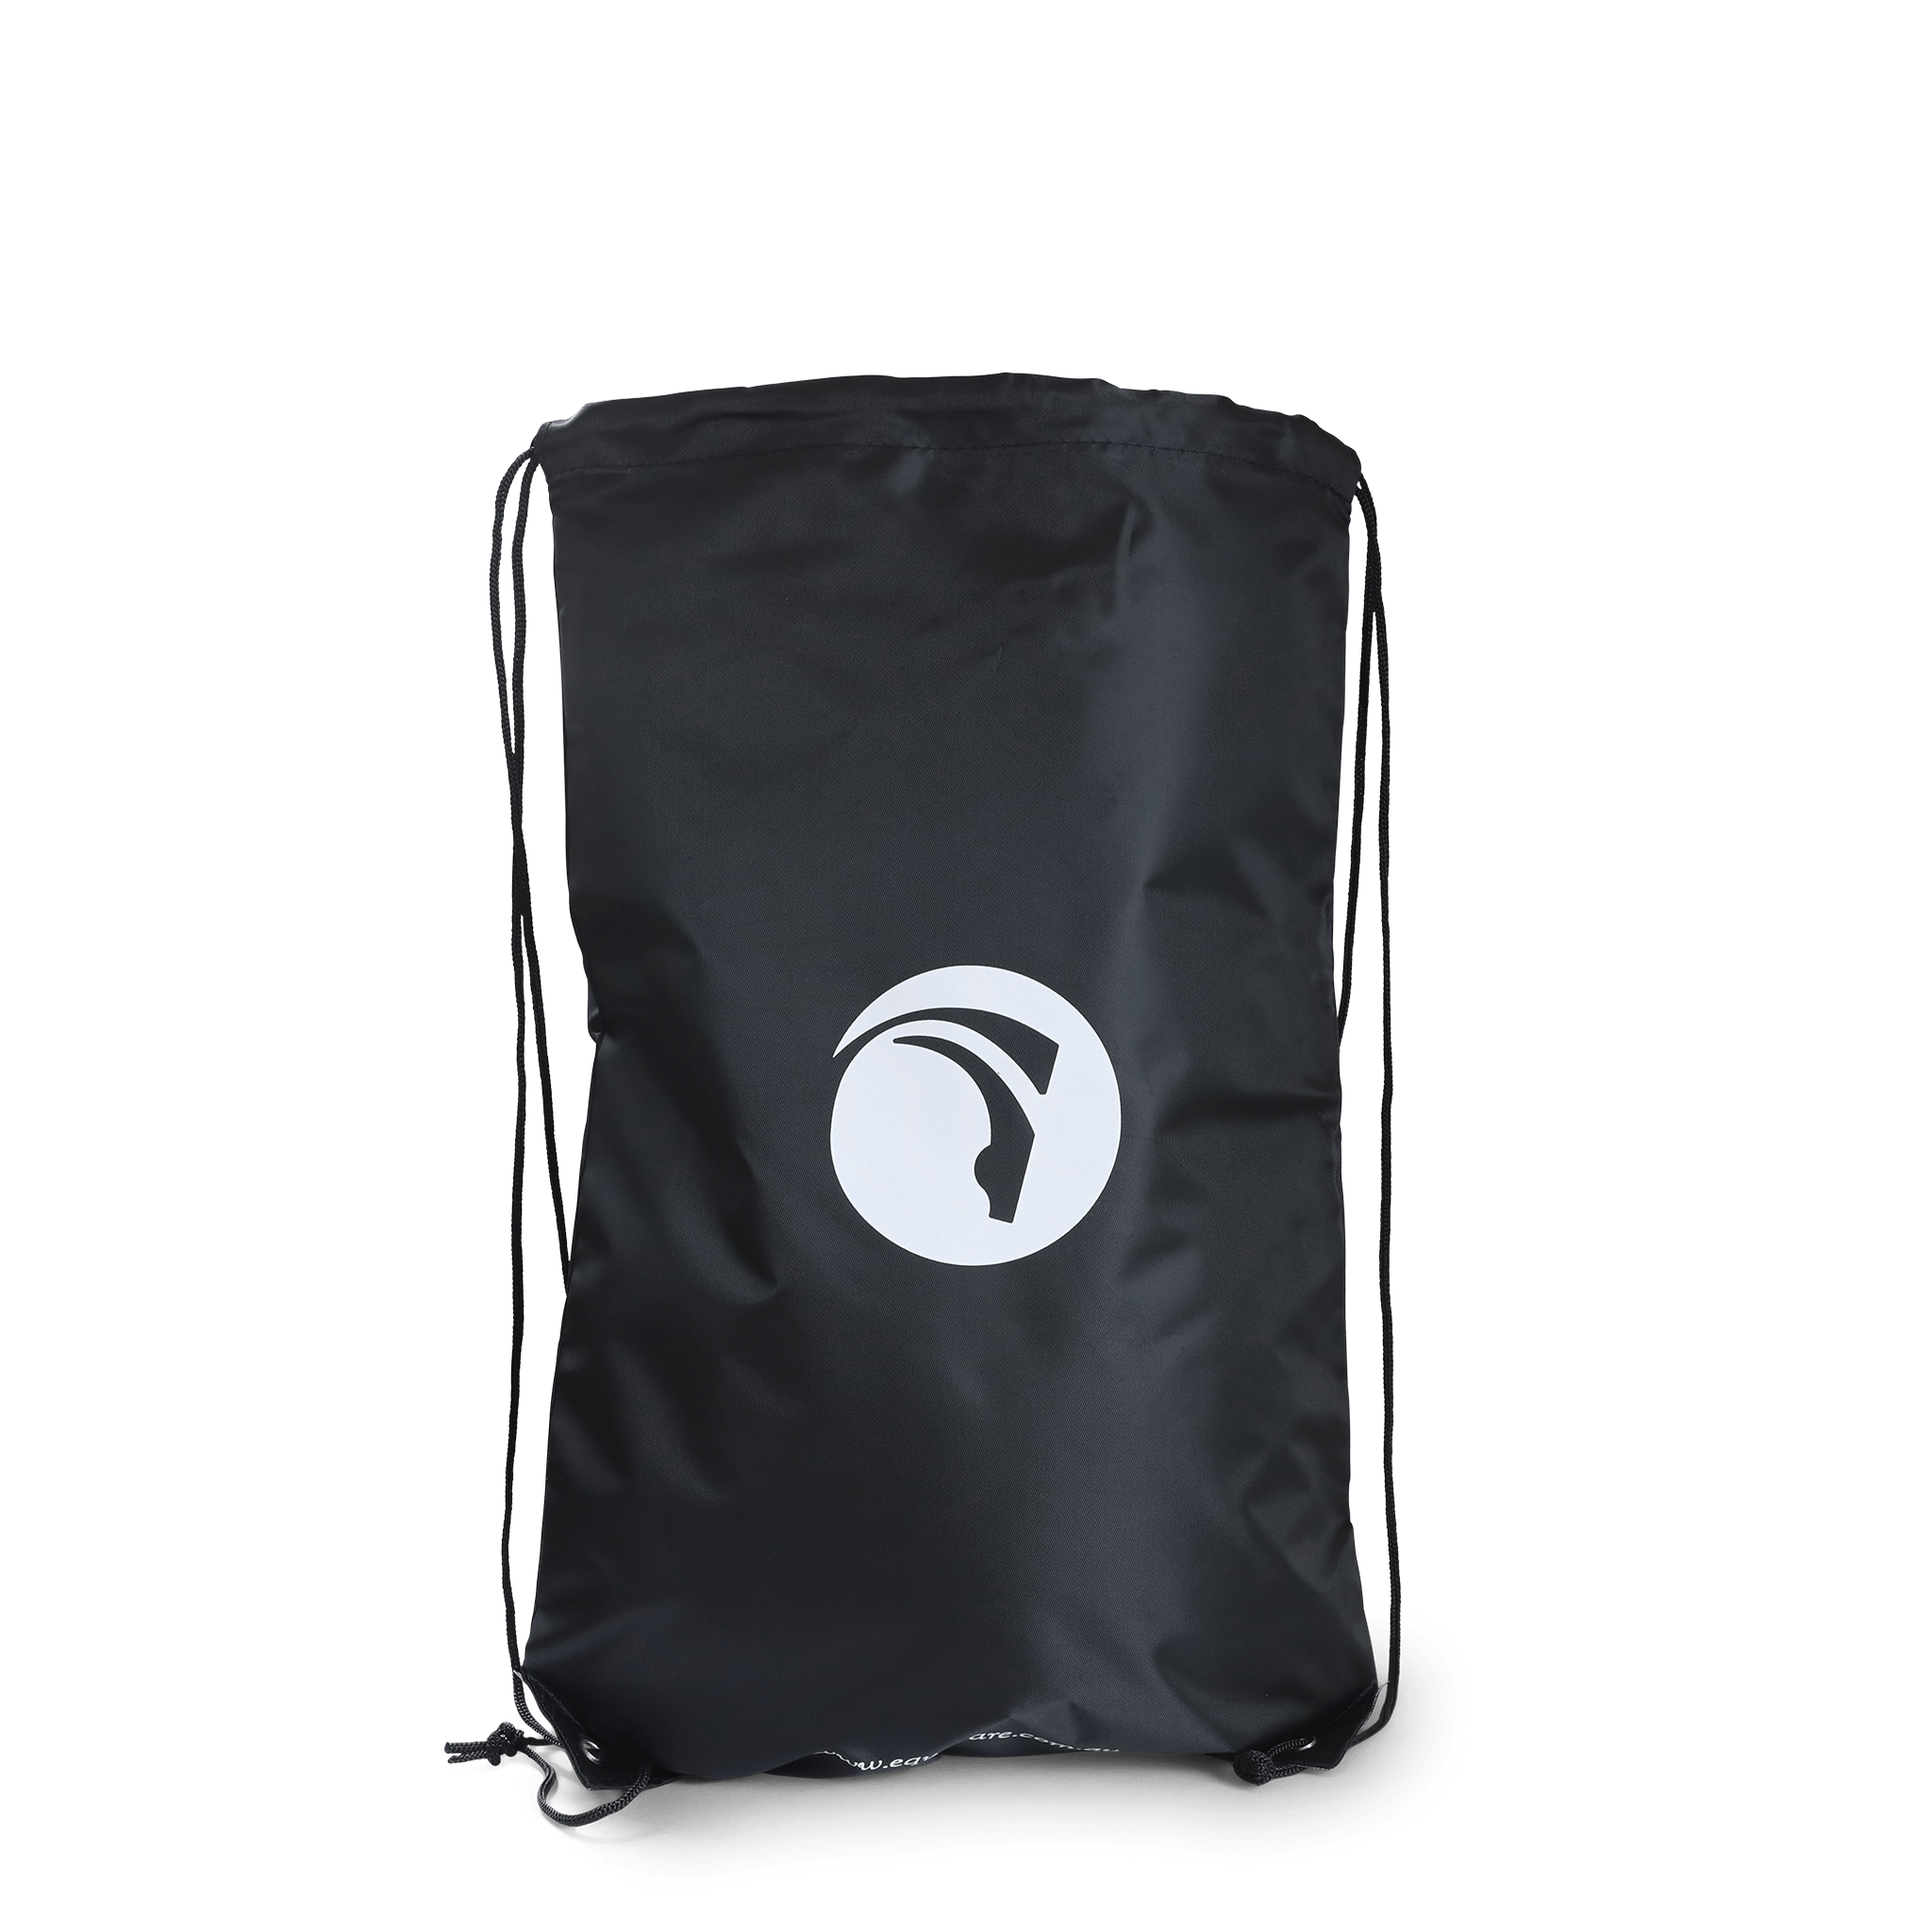 EquaLife® Little Lunch Bag